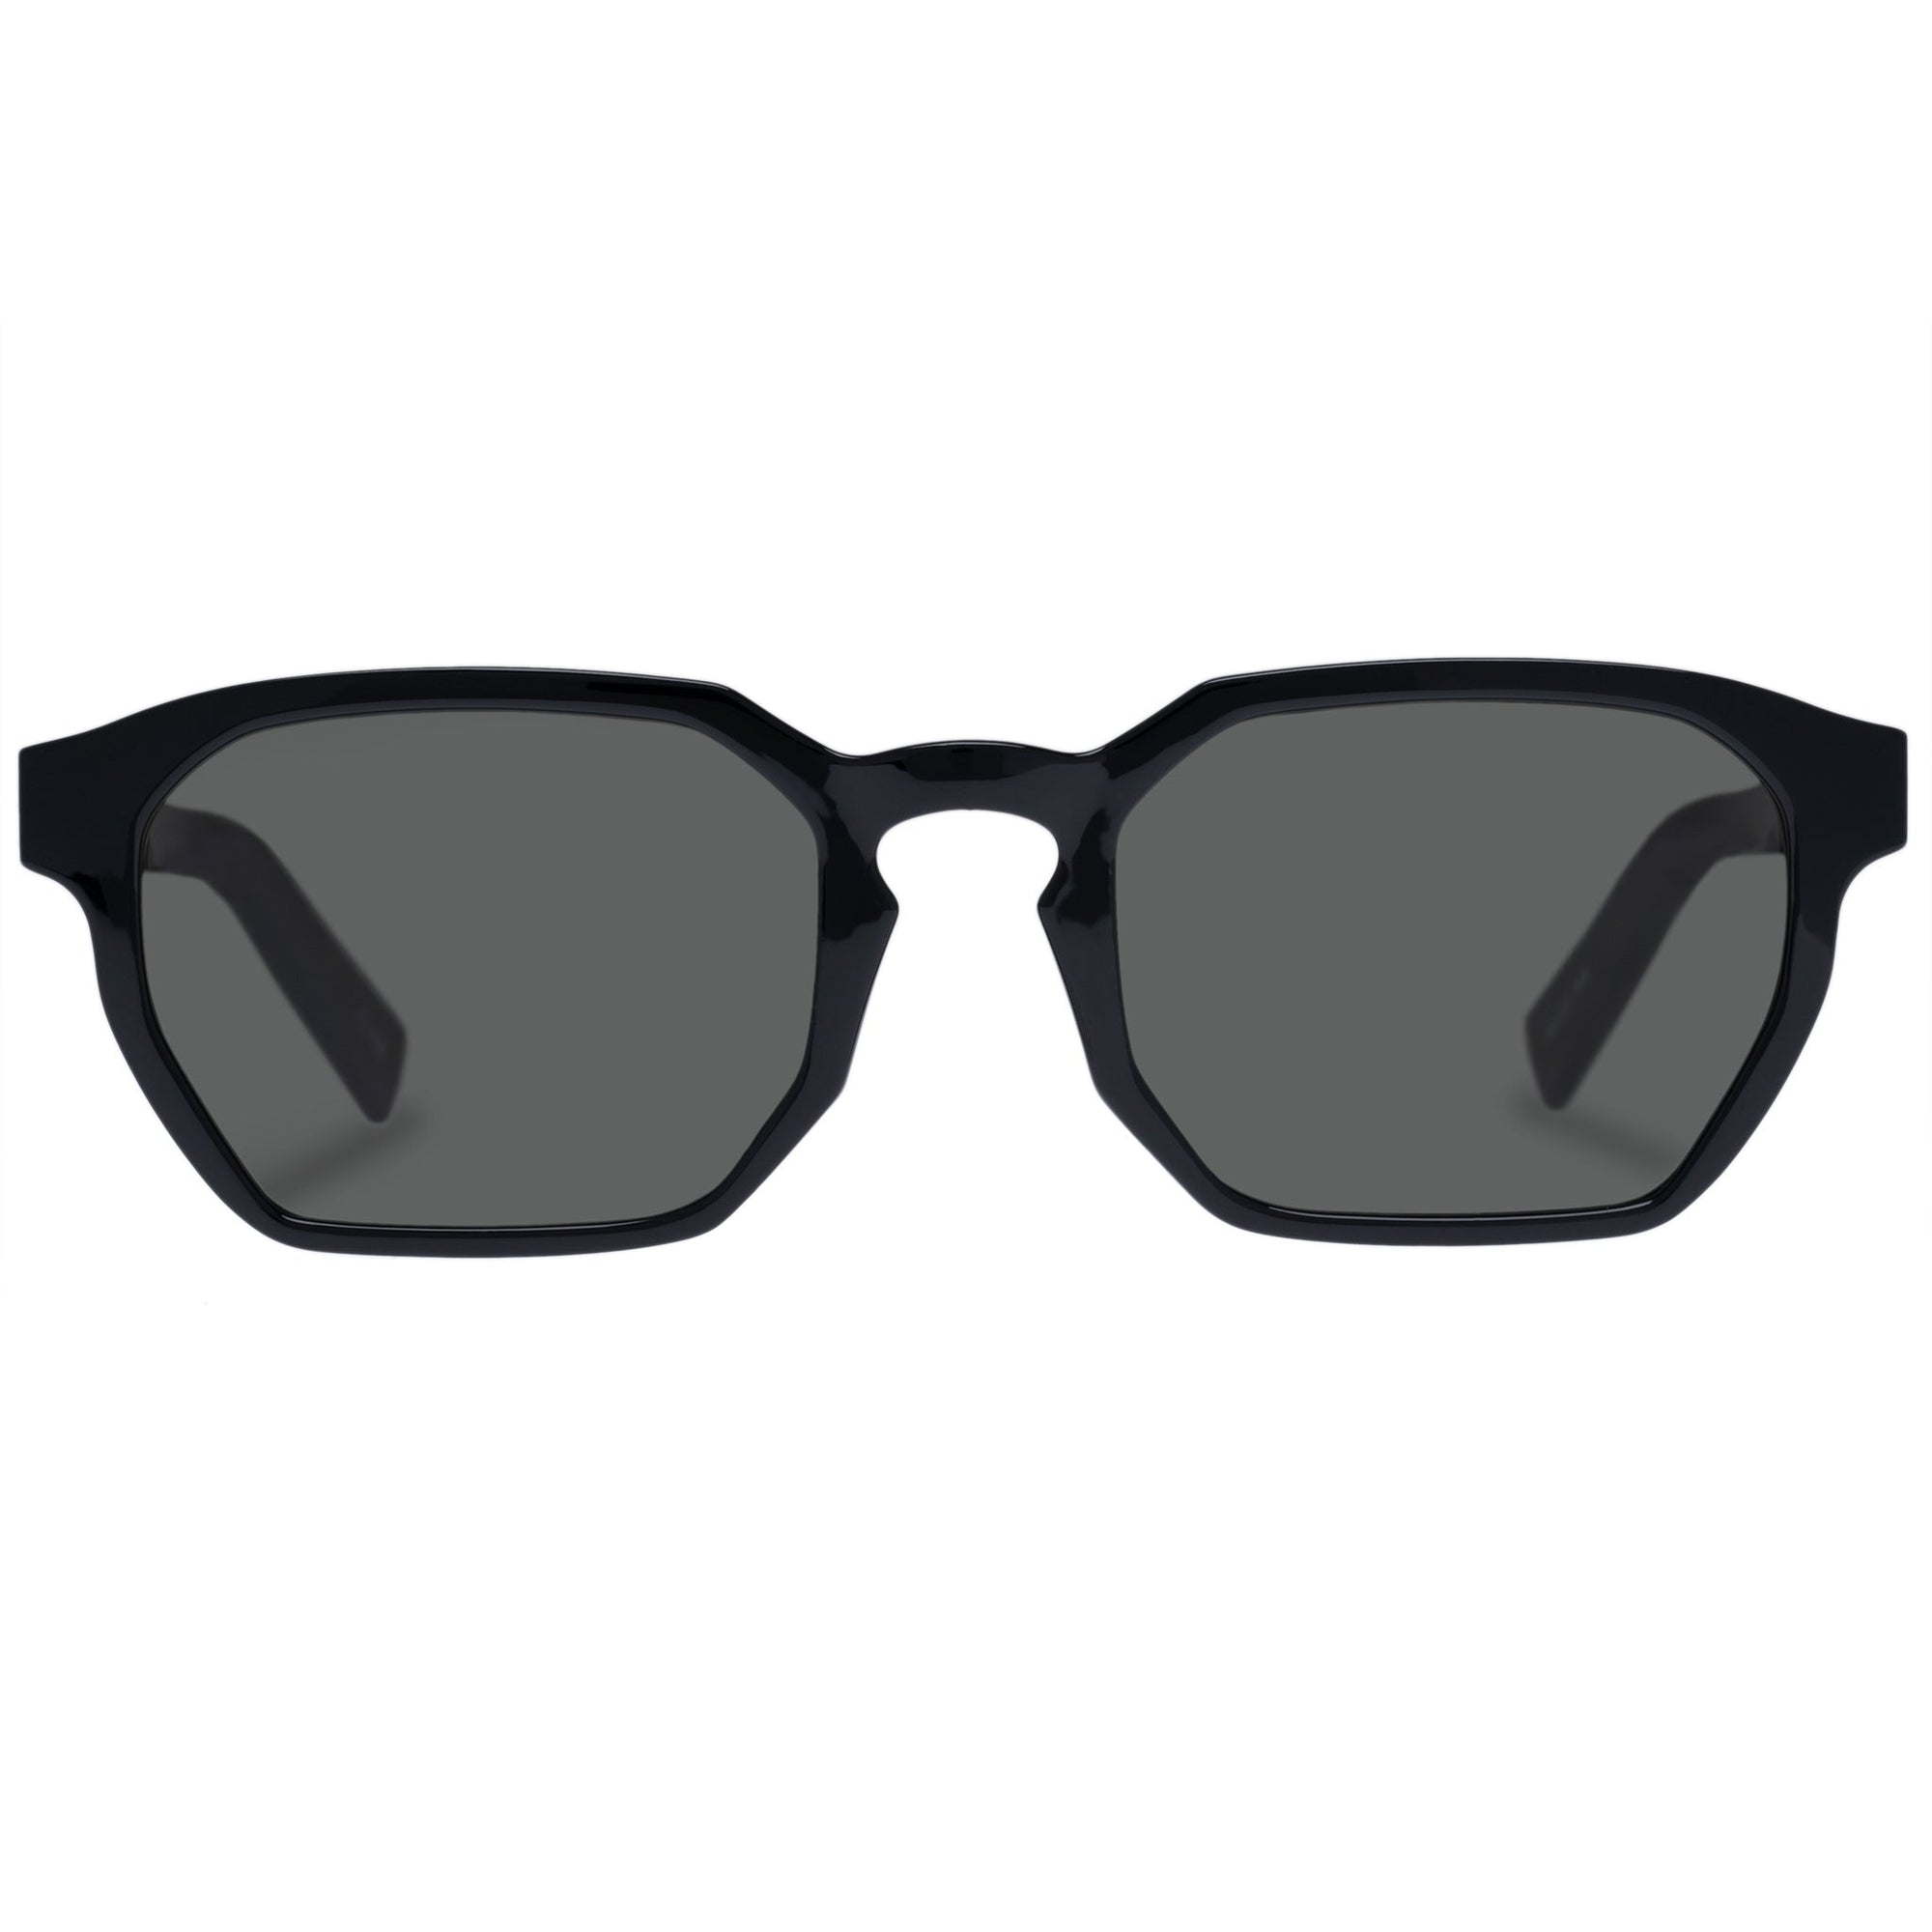 Le Danzing Black Women's Round Sunglasses | Le Specs